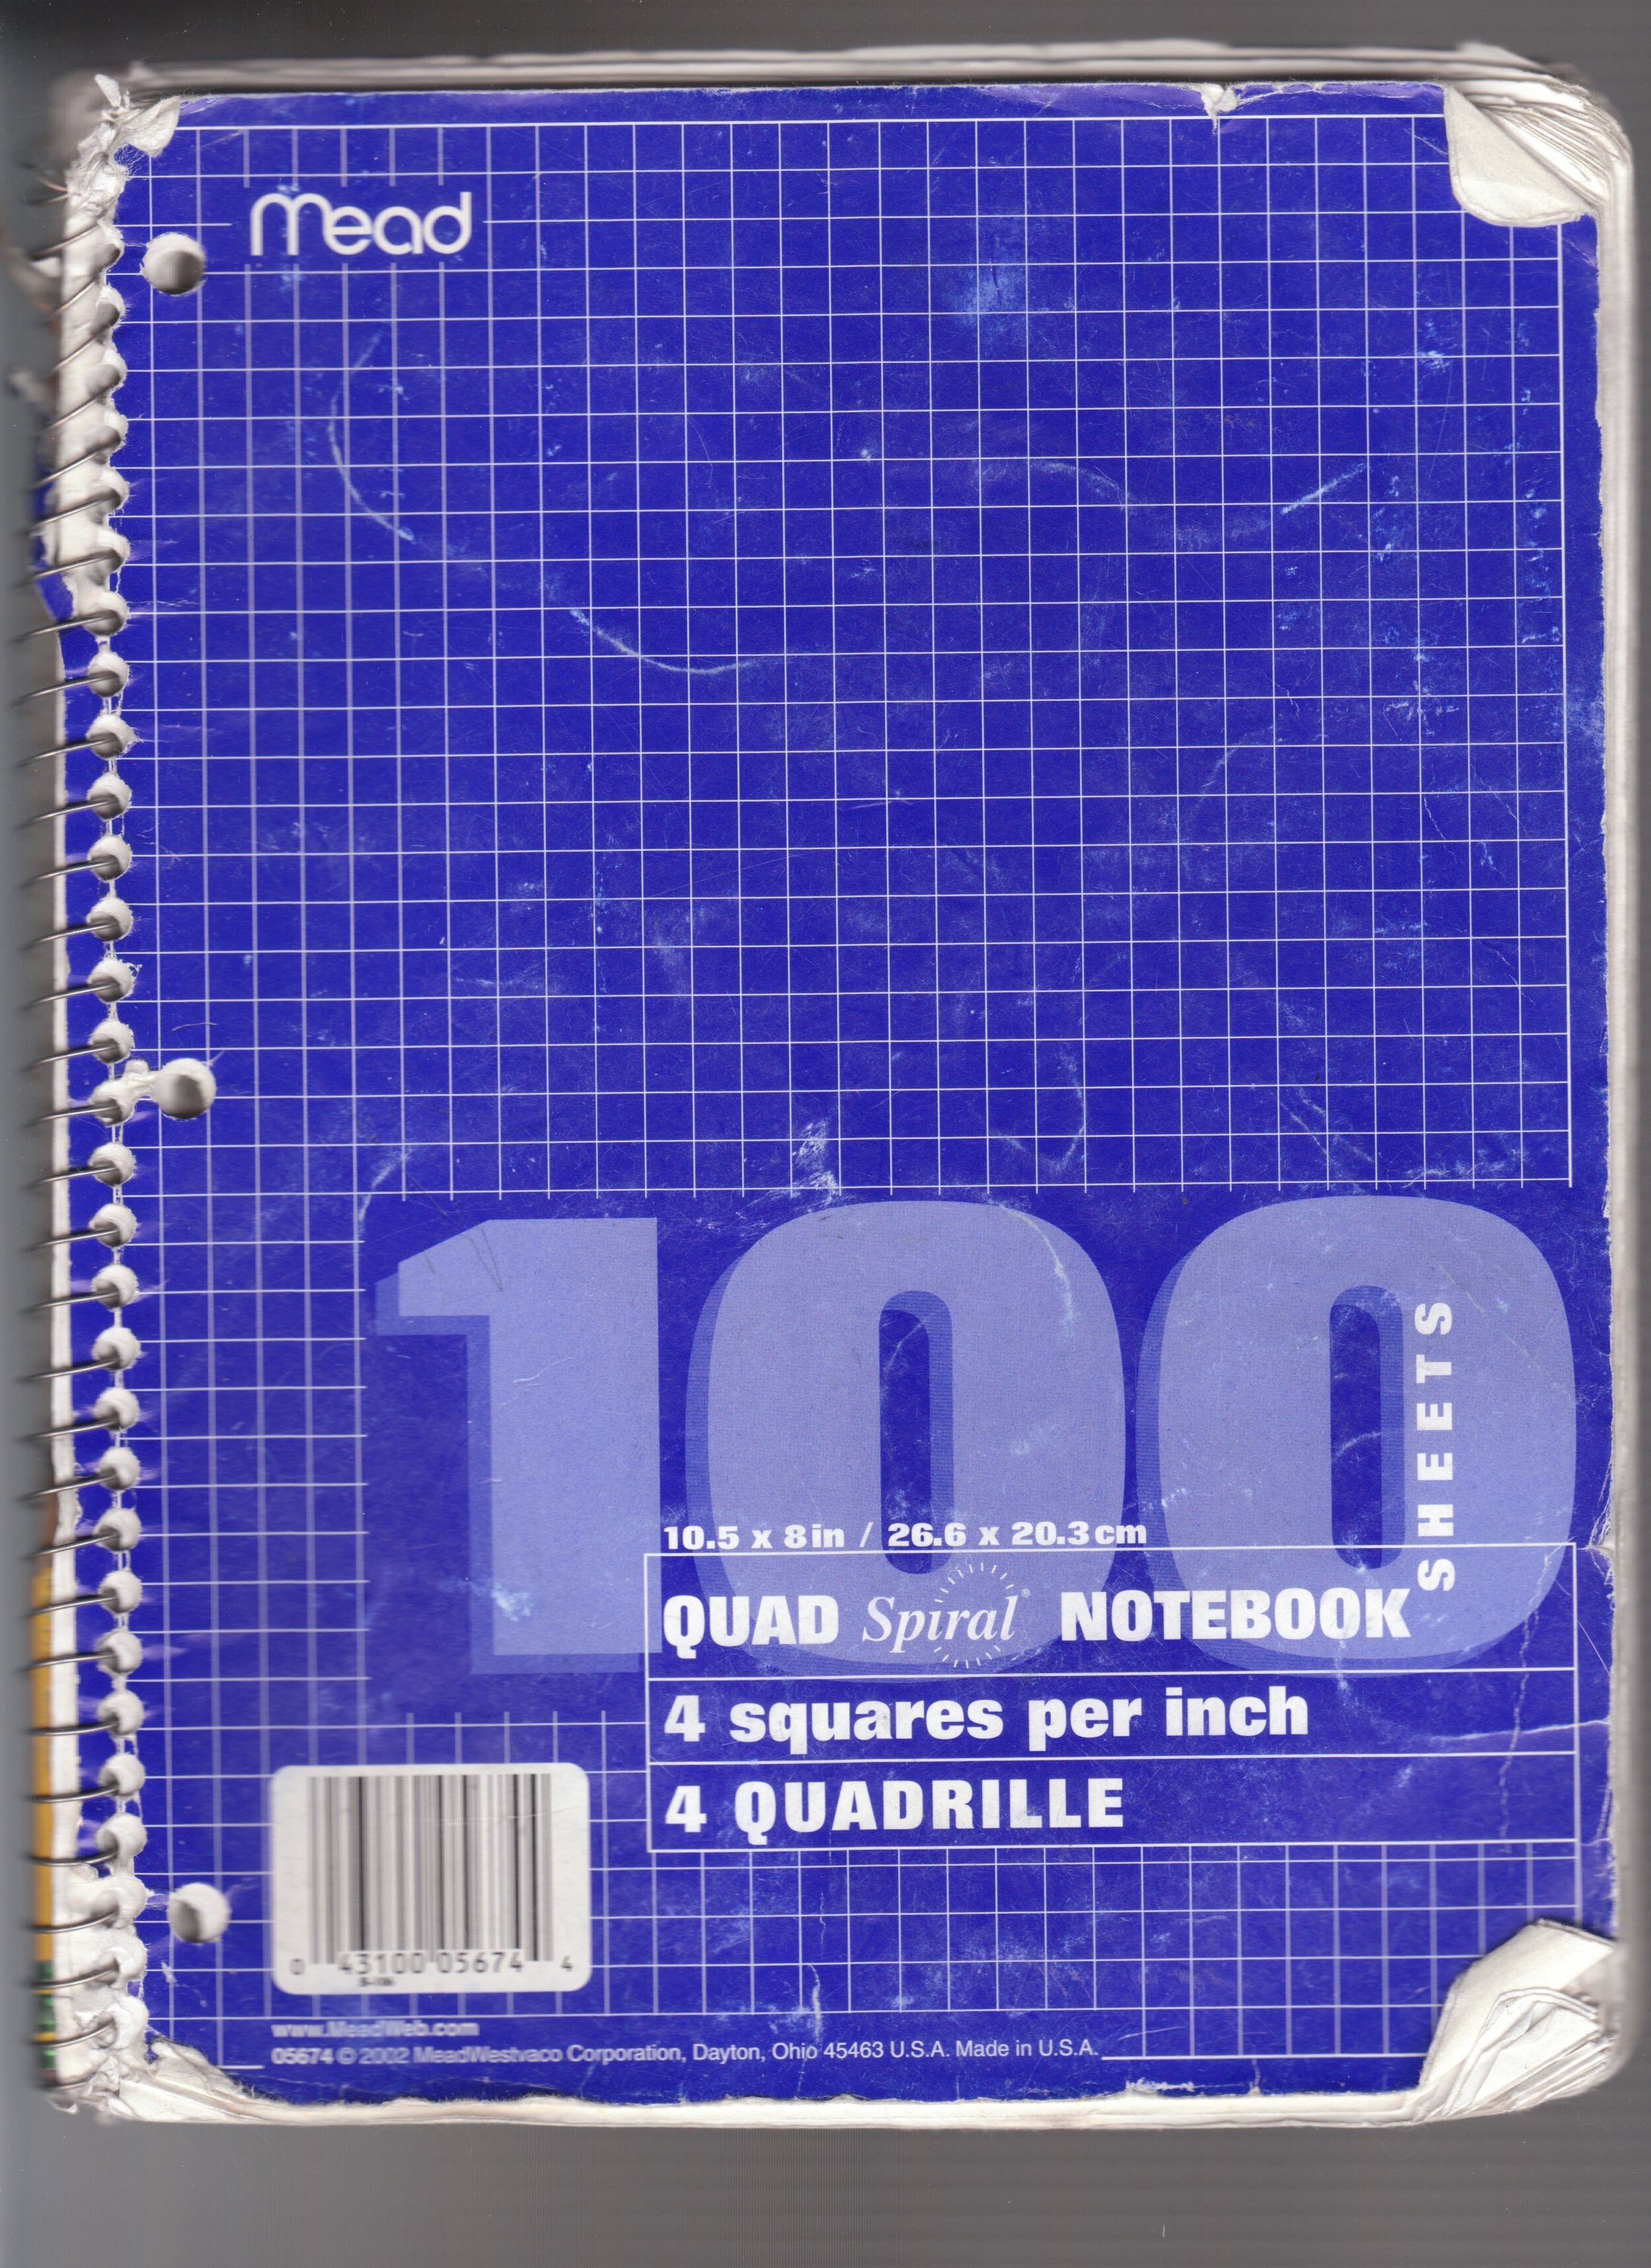 100 Quad (c. 2006)